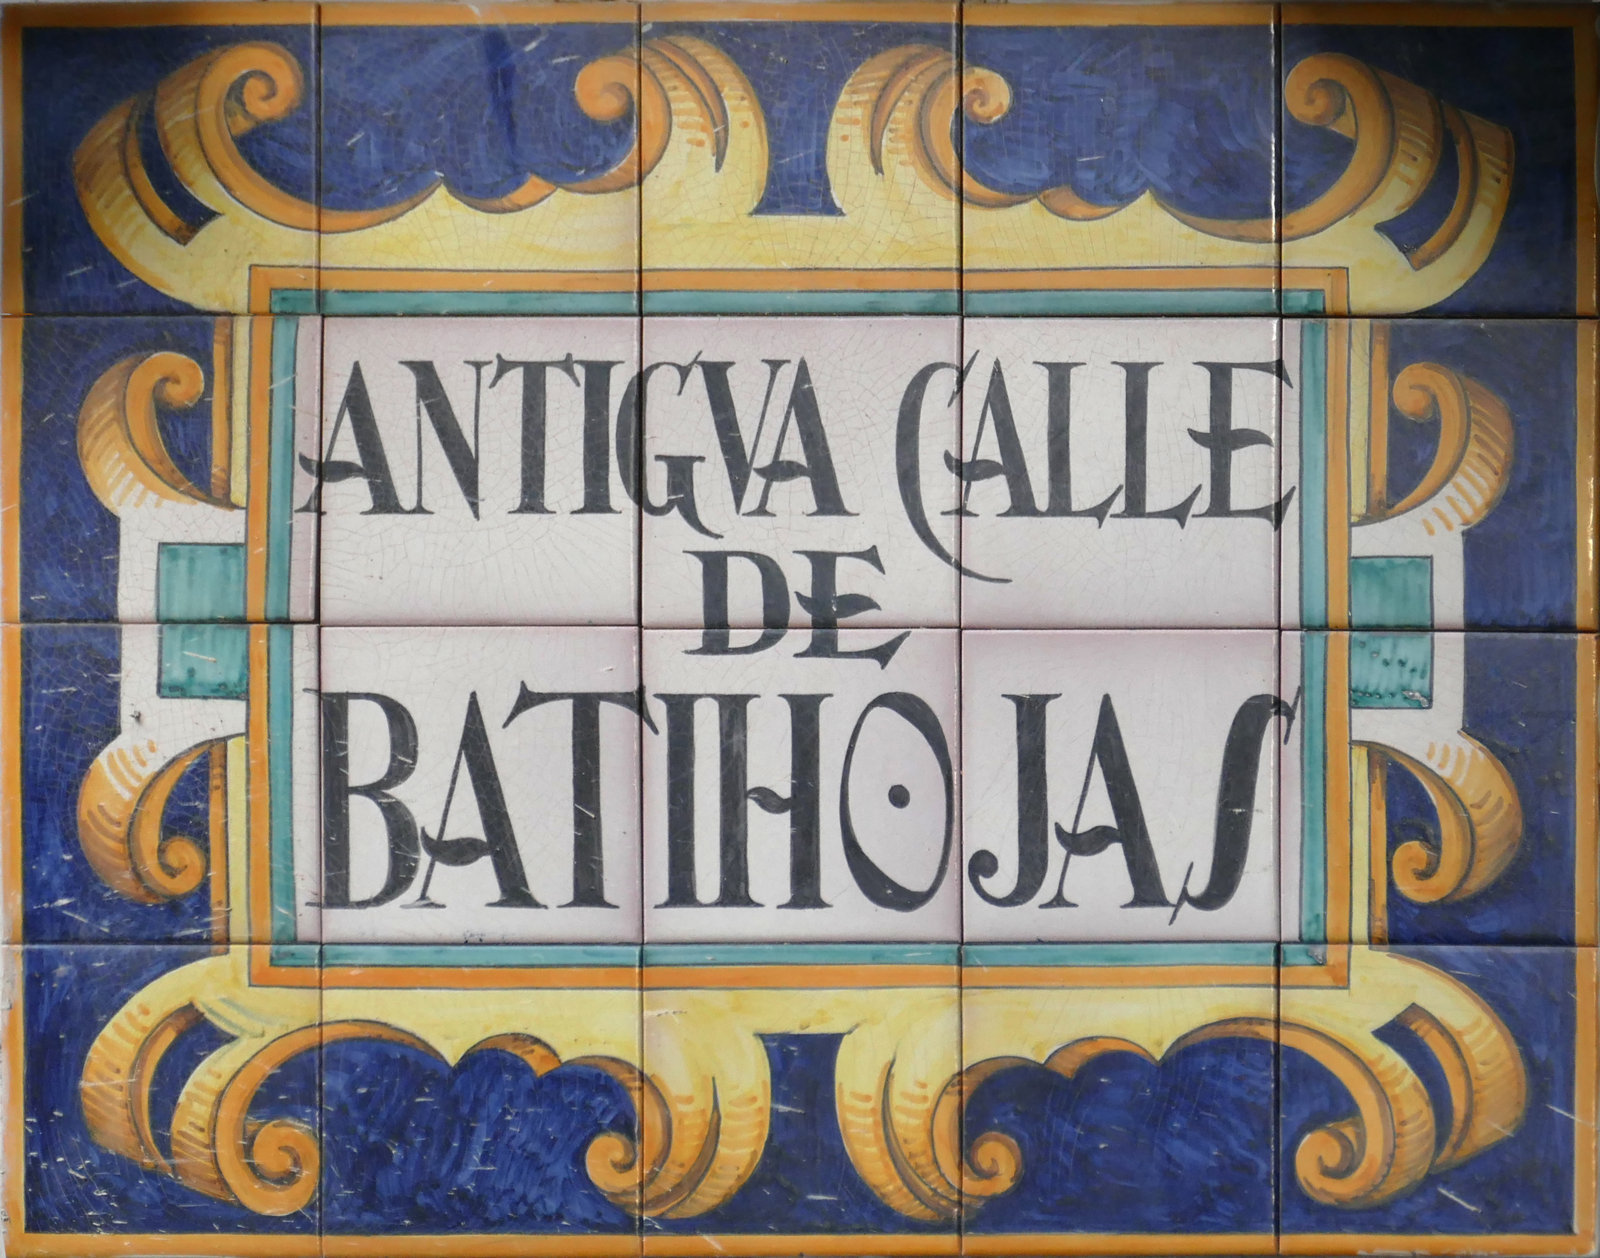 01006. Rótulo de la antigua calle de Batihojas. Sevilla.